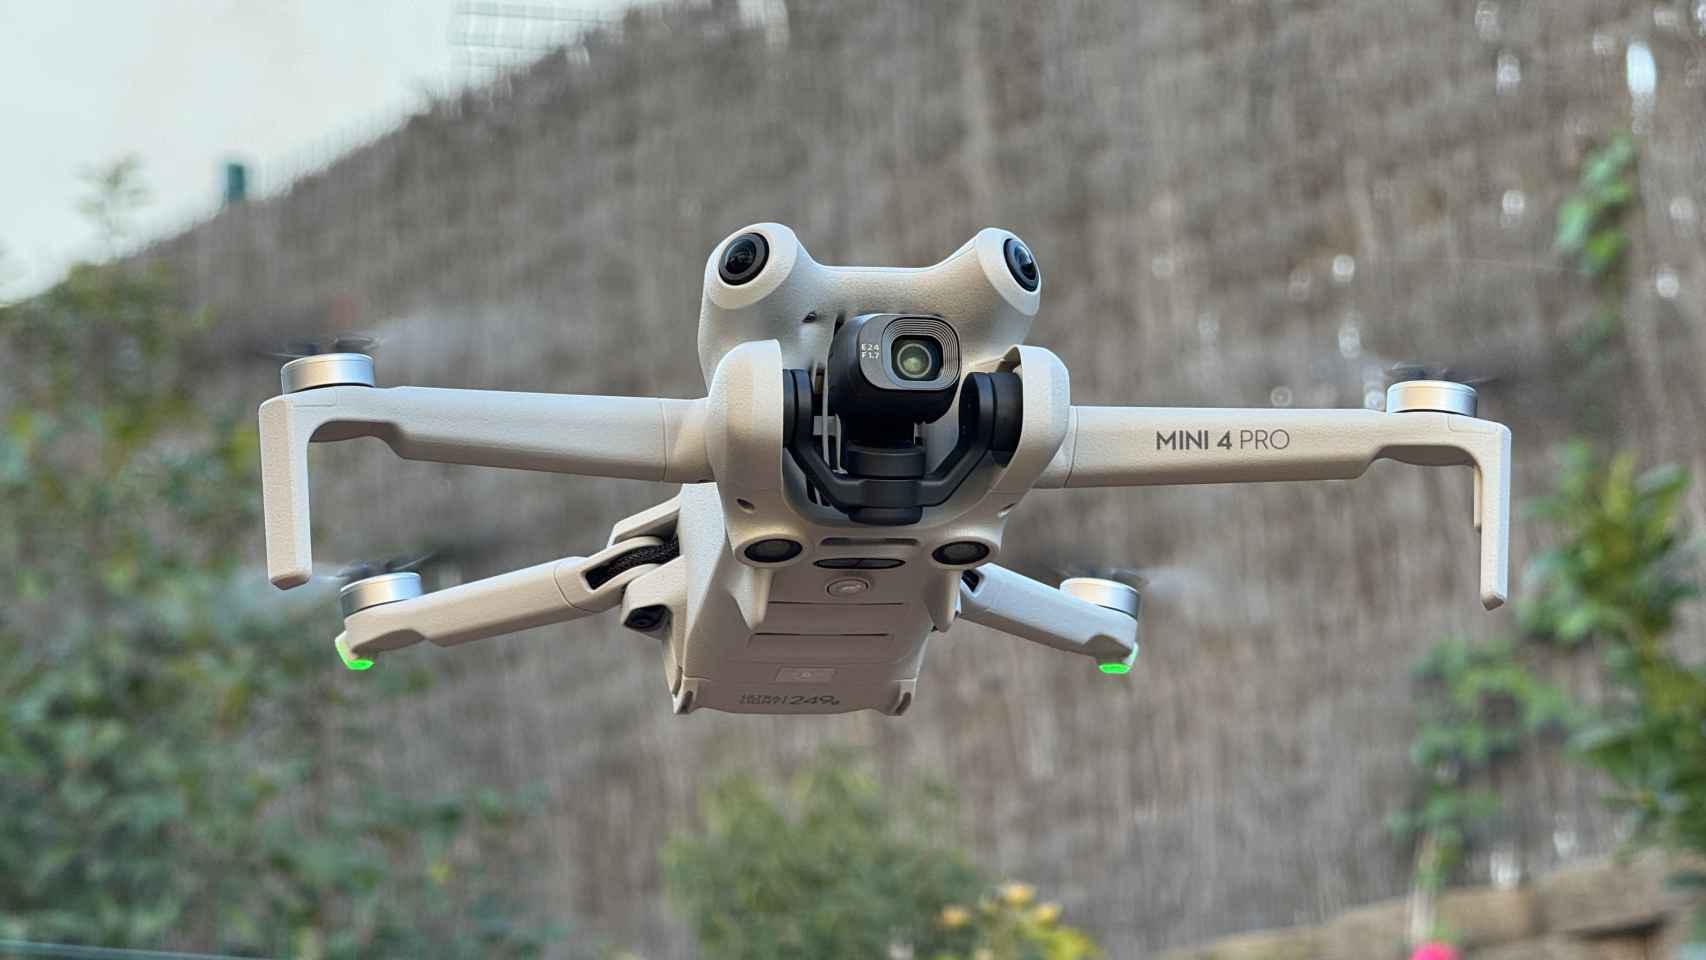 DJI MINI 4 PRO - ¿El DRON de 250gr que lo TIENE TODO?